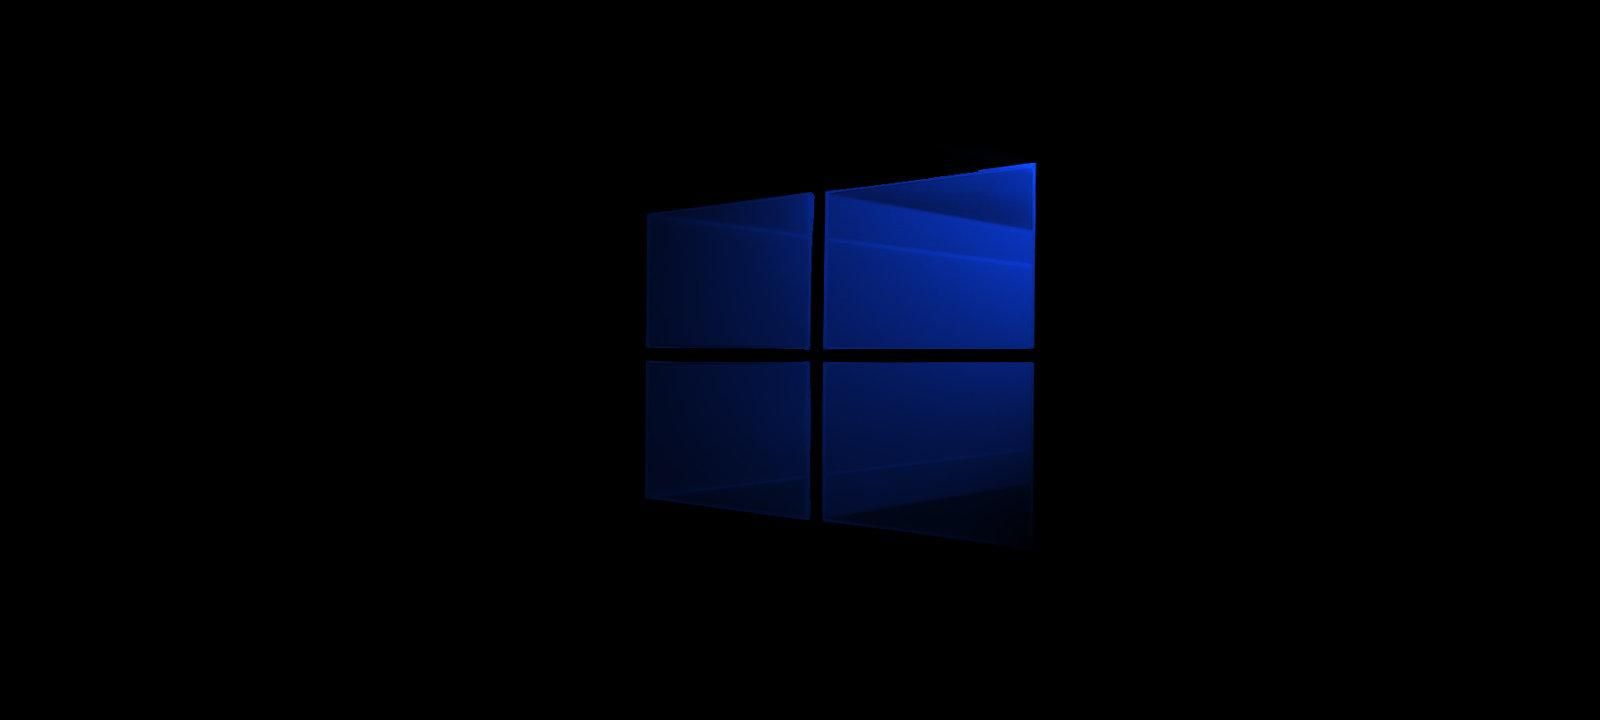 Обновление Windows 10 продолжает разочаровывать: что опять не так